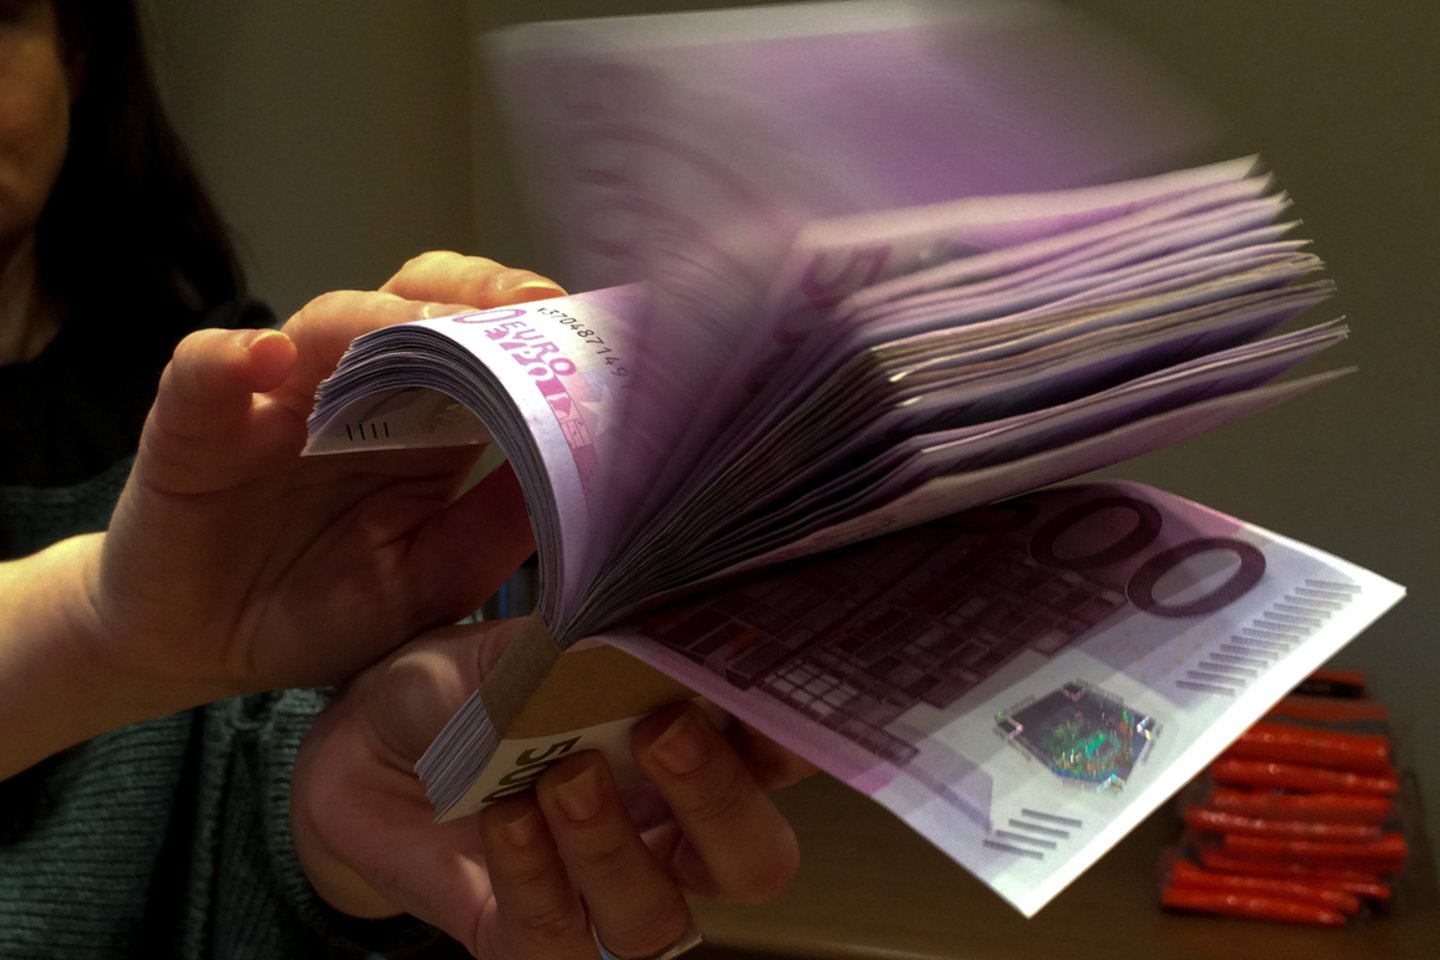  Kaune iš turtingo palūkininko būsto pagrobta 42 tūkst. eurų ir skolos raštų už 714 tūkst. eurų. <br> V.Ščiavinsko asociatyvioji nuotr.